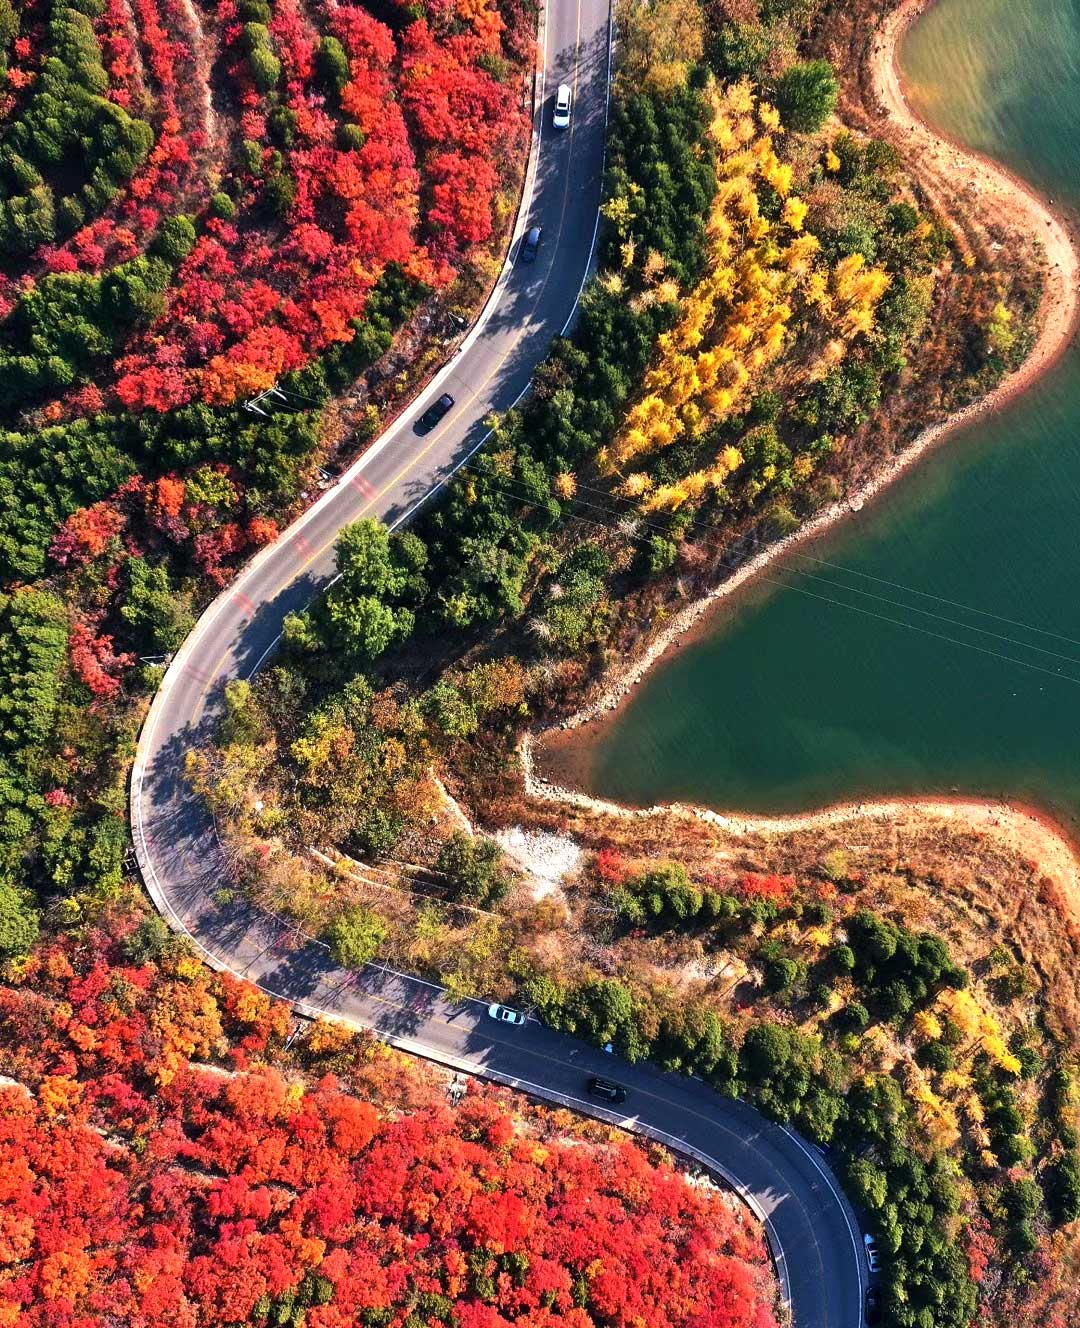 du lịch bắc kinh mùa thu: 10 điểm tham quan lá vàng nổi tiếng nhất